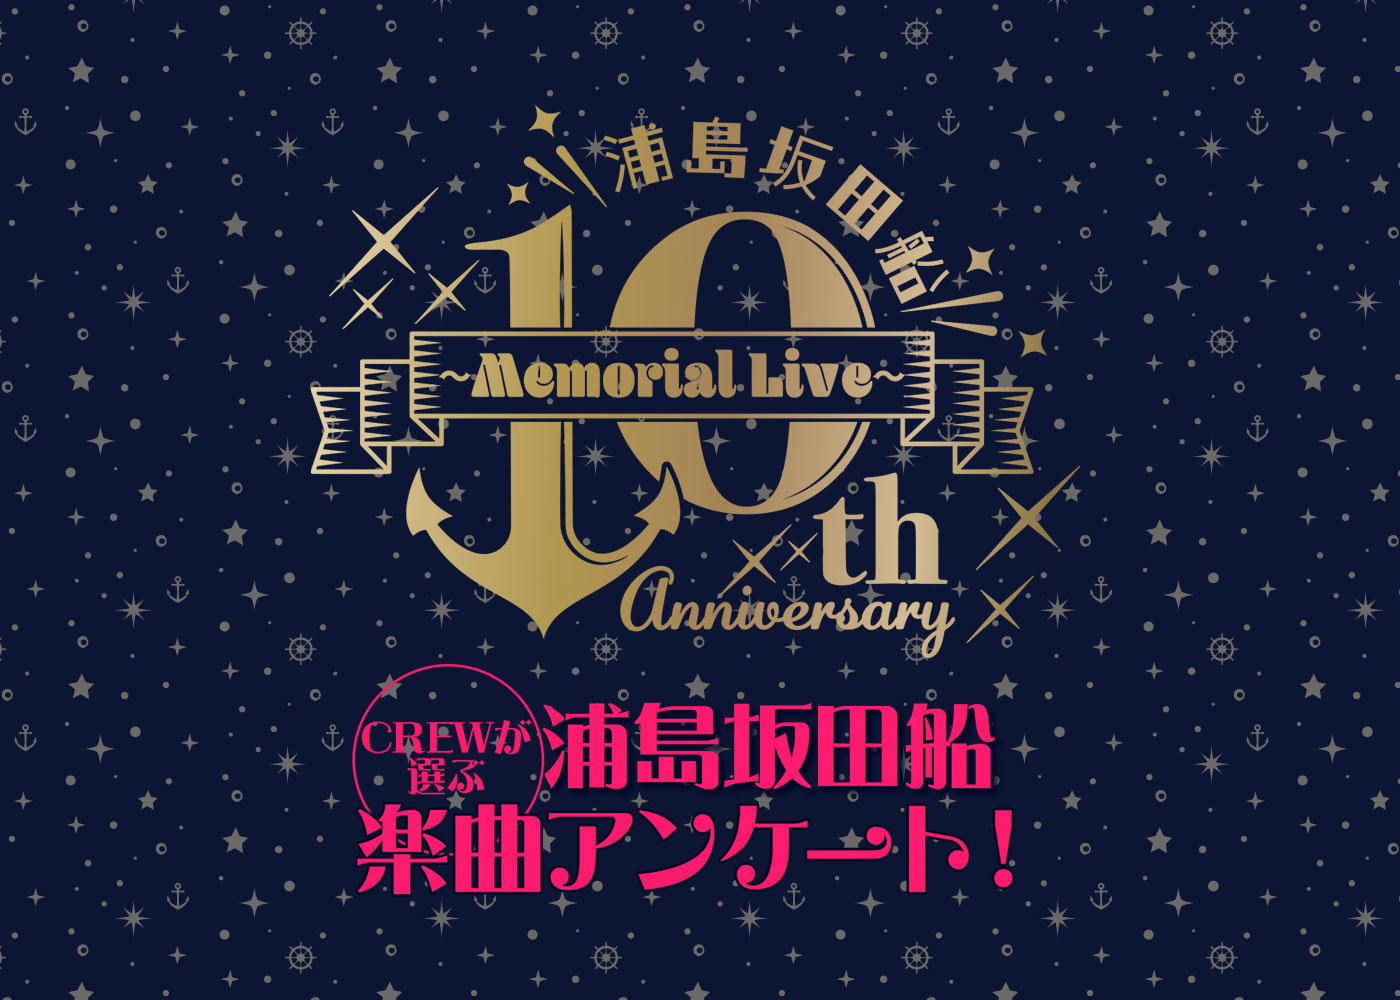 浦島坂田船 10th Anniversary 〜Memorial Live～ リクエスト曲